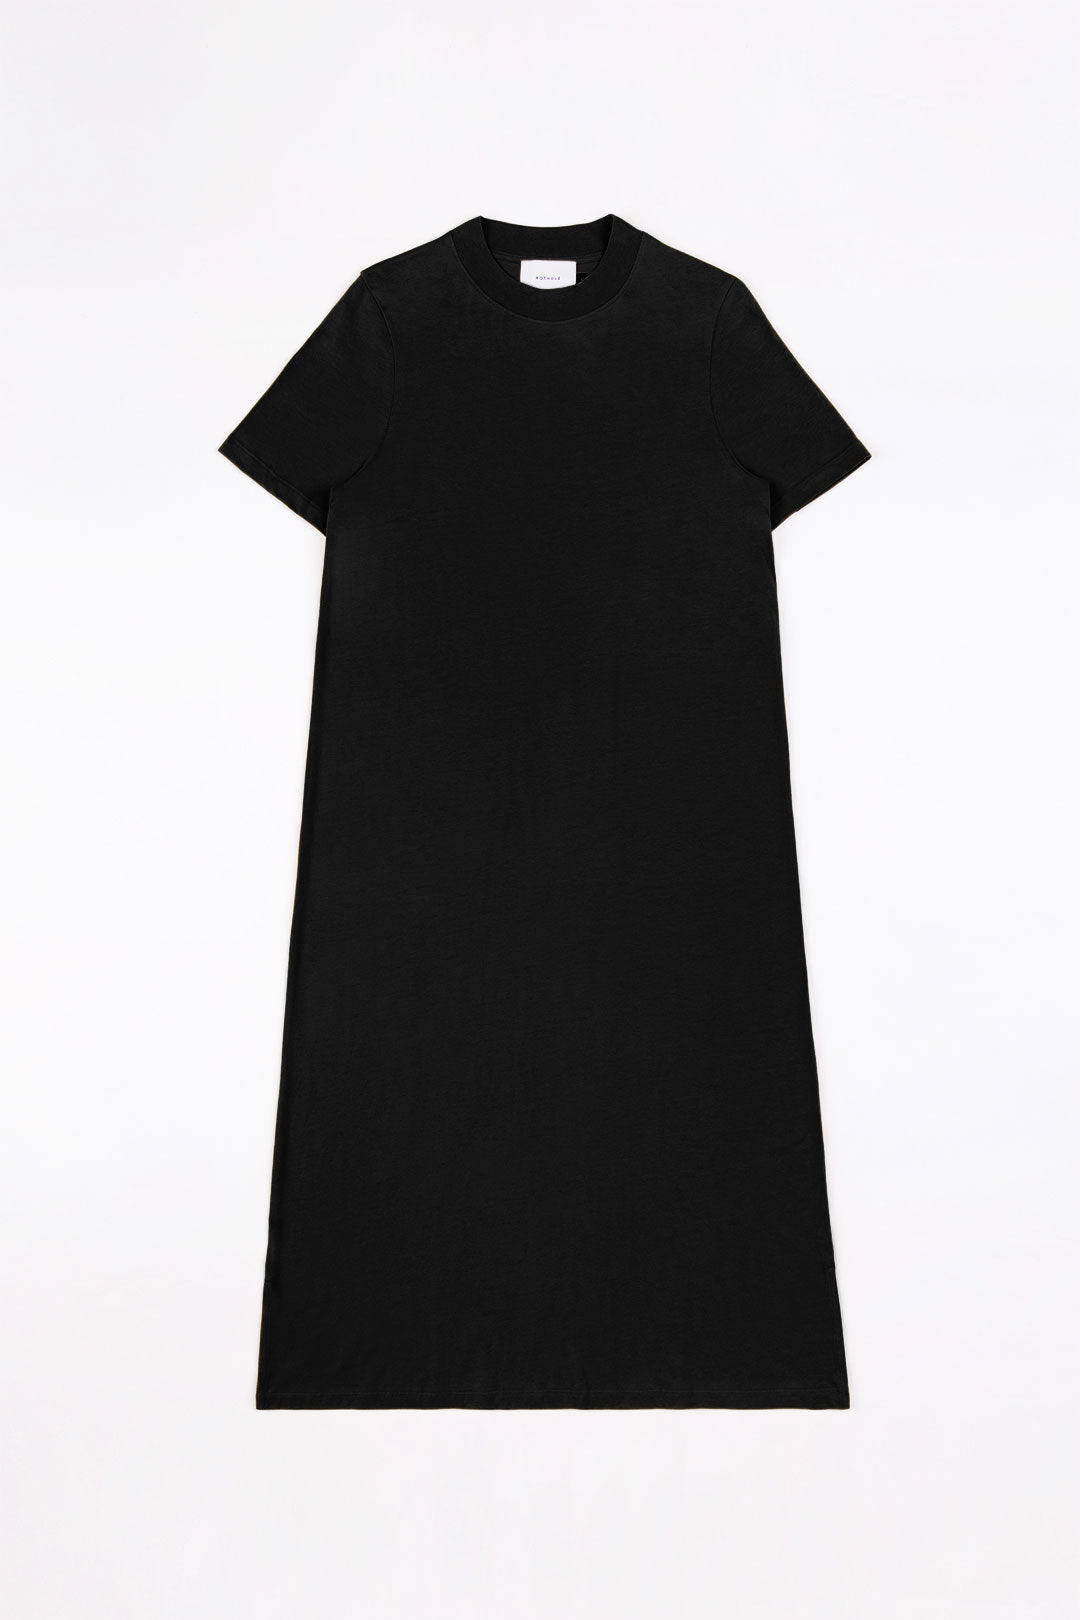 Schwarzes T-Shirt-Kleid aus 100% Bio-Baumwolle von Rotholz